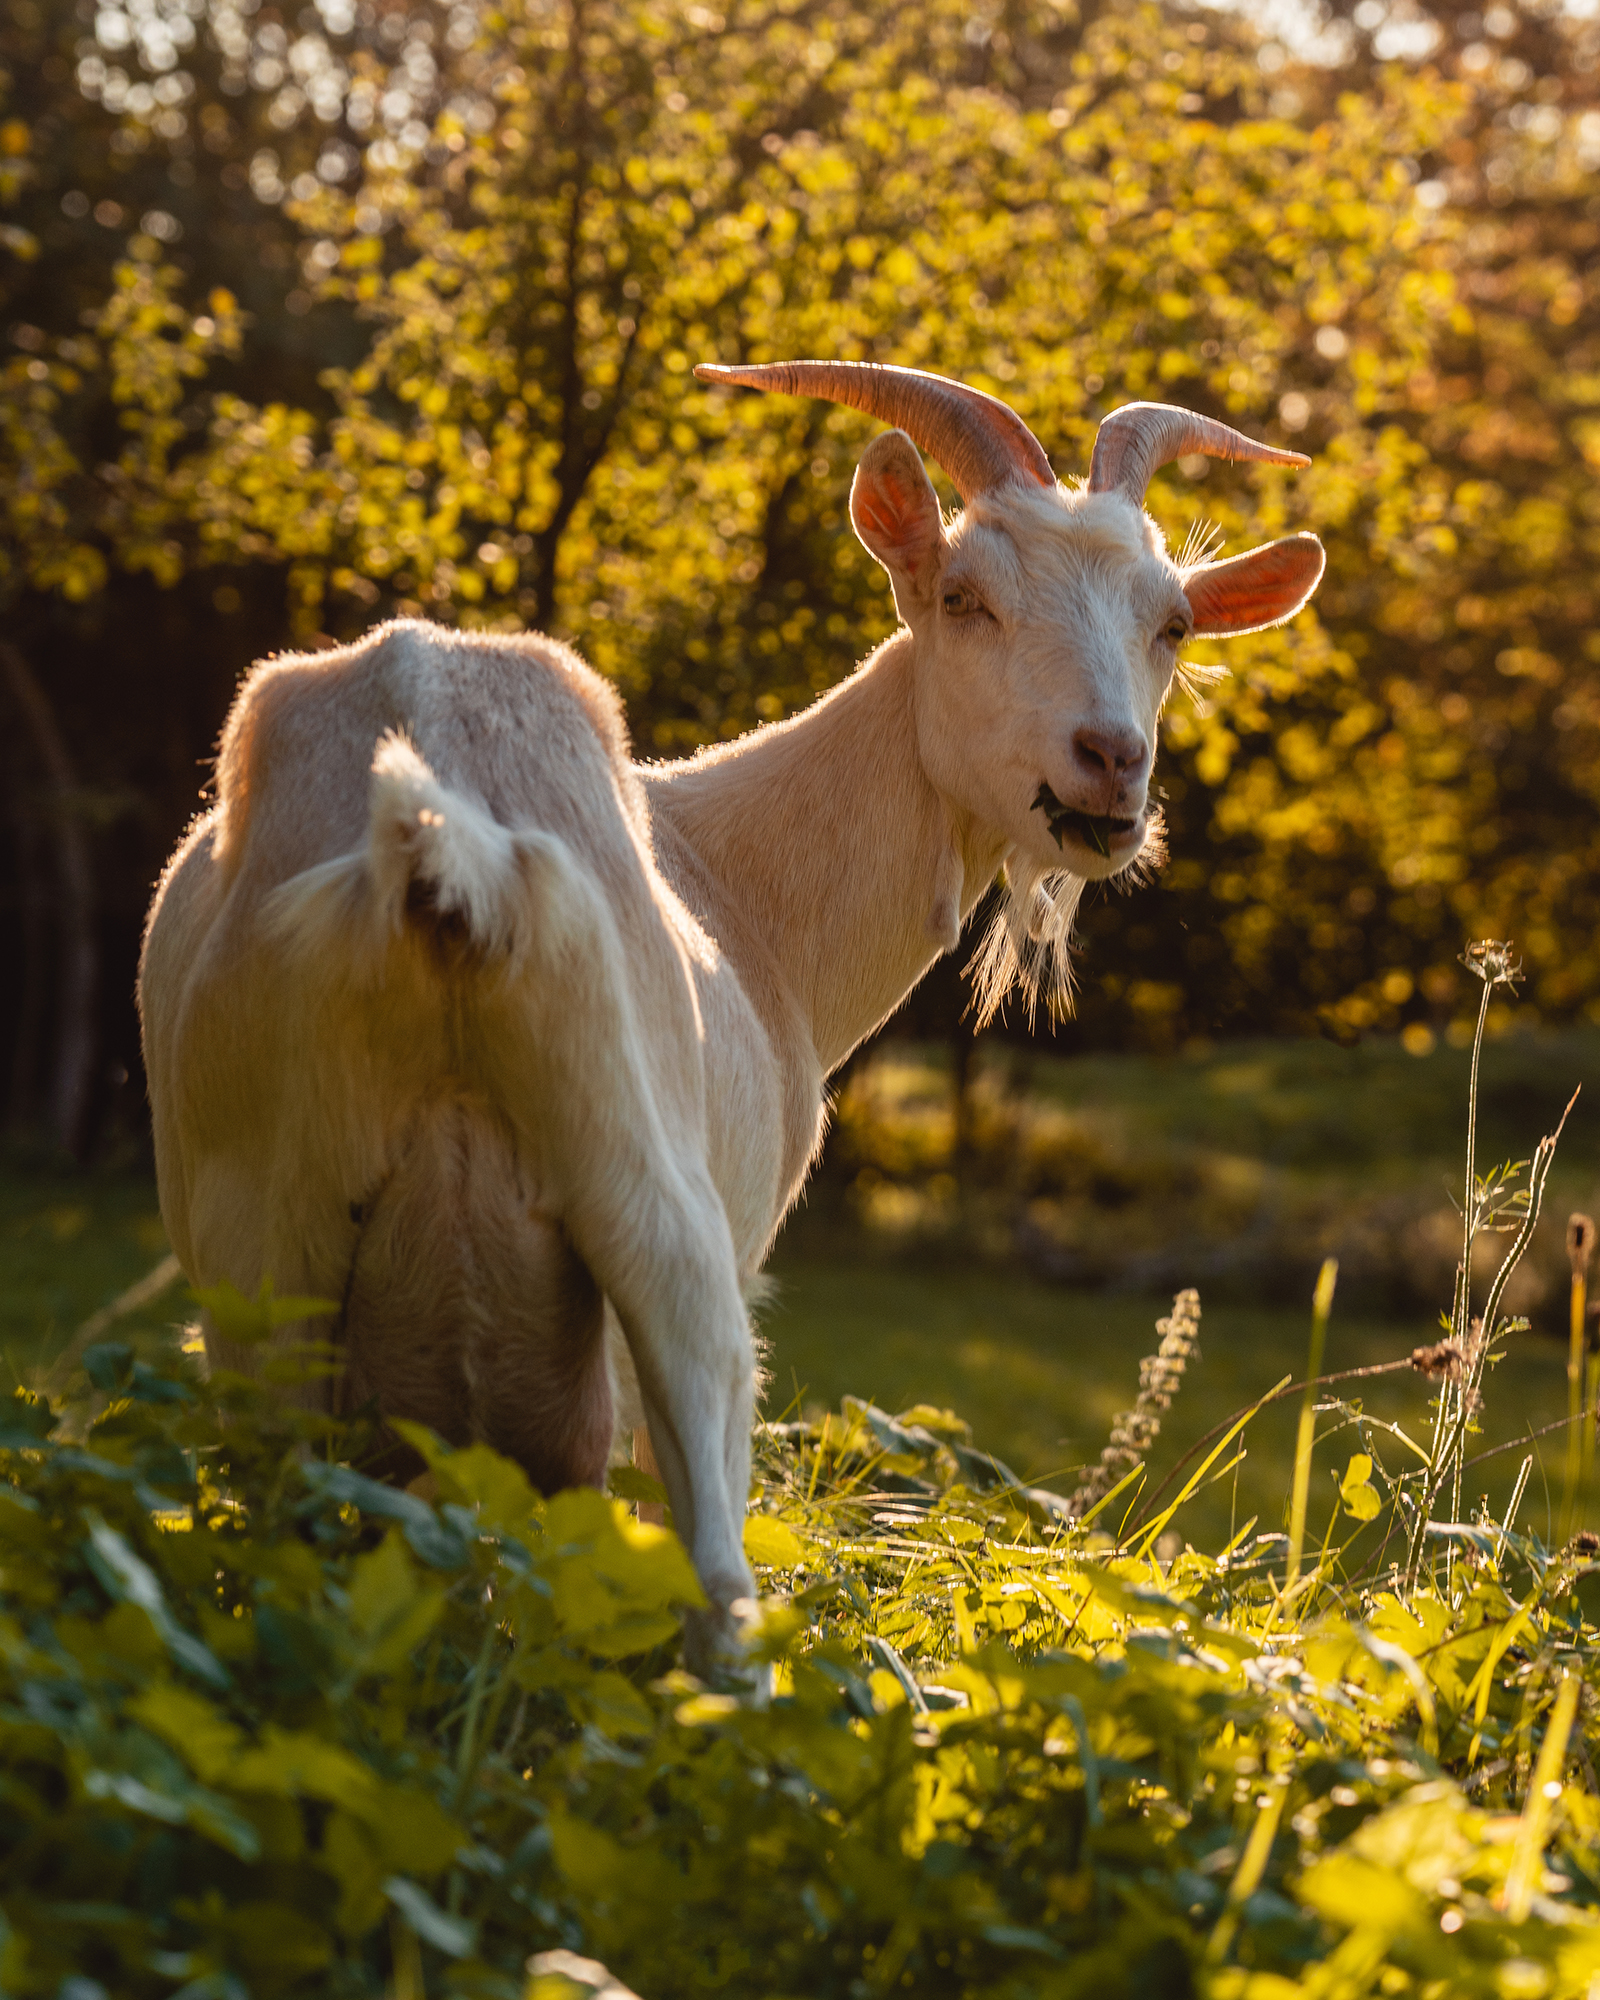 September 29, 2018 - Zasavska Sveta gora: Photo from a hike from Vace to Zasavska Sveta gora in Slovenia - photo of a goat on a pasture near Zasavska Sveta gora.